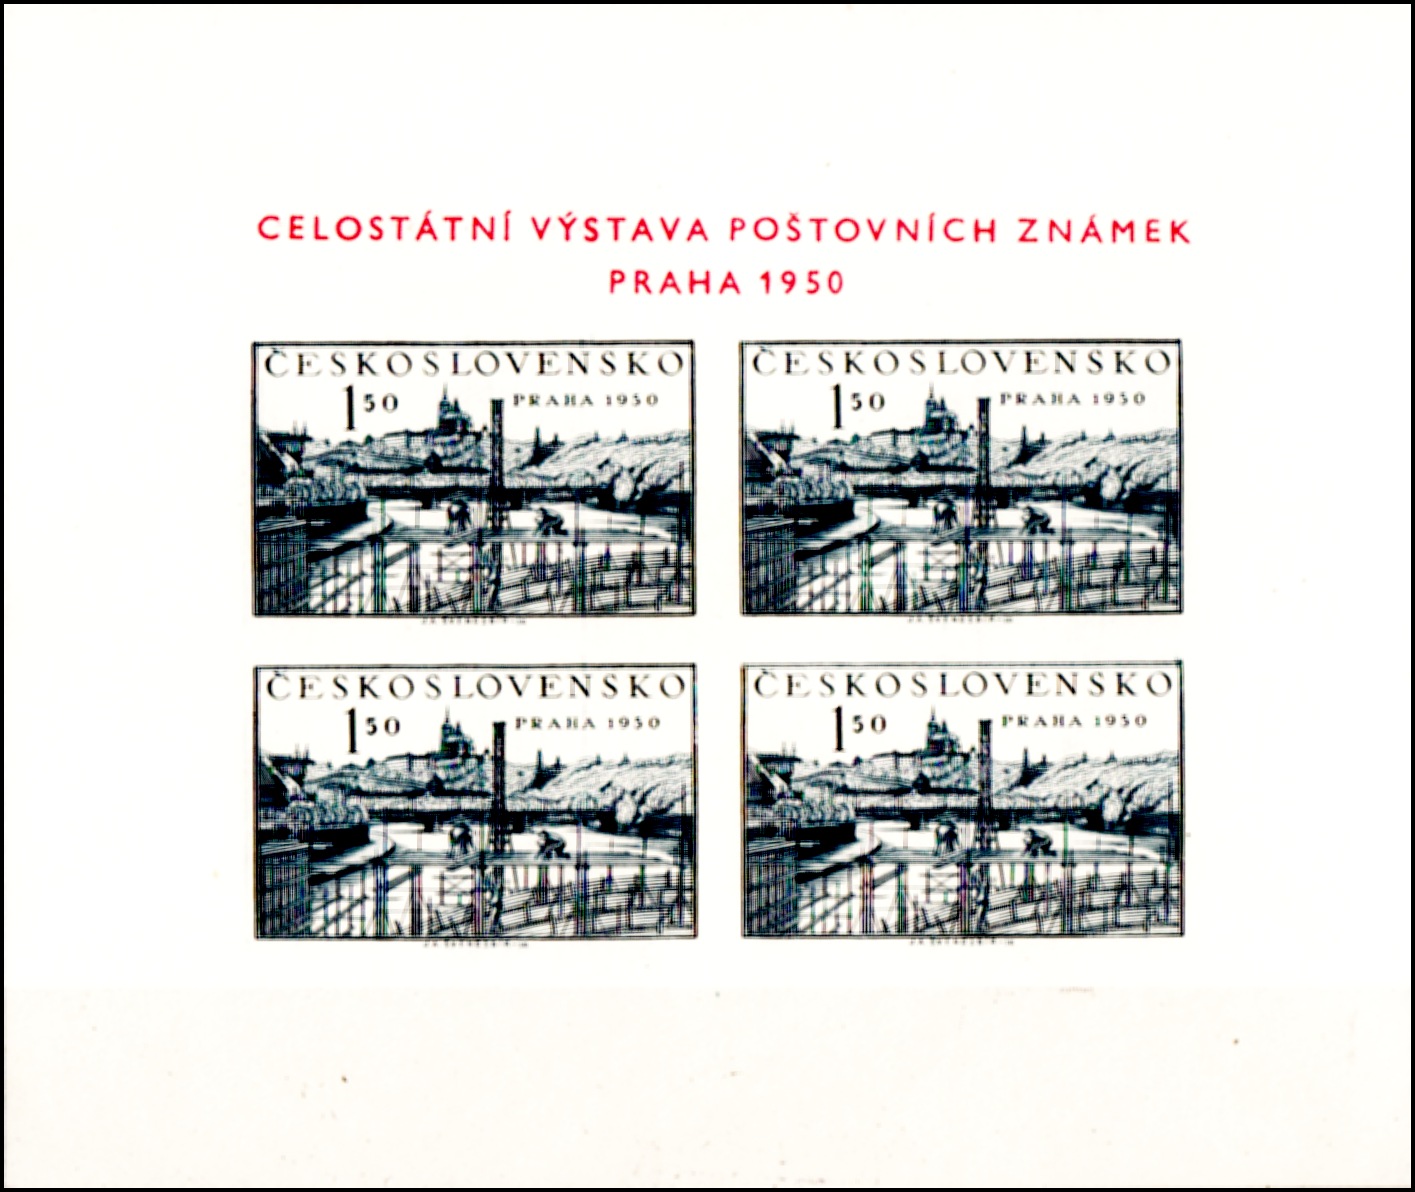 Celostátní výstava poštovních známek Praha 1950 (Současná Praha) - Aršík